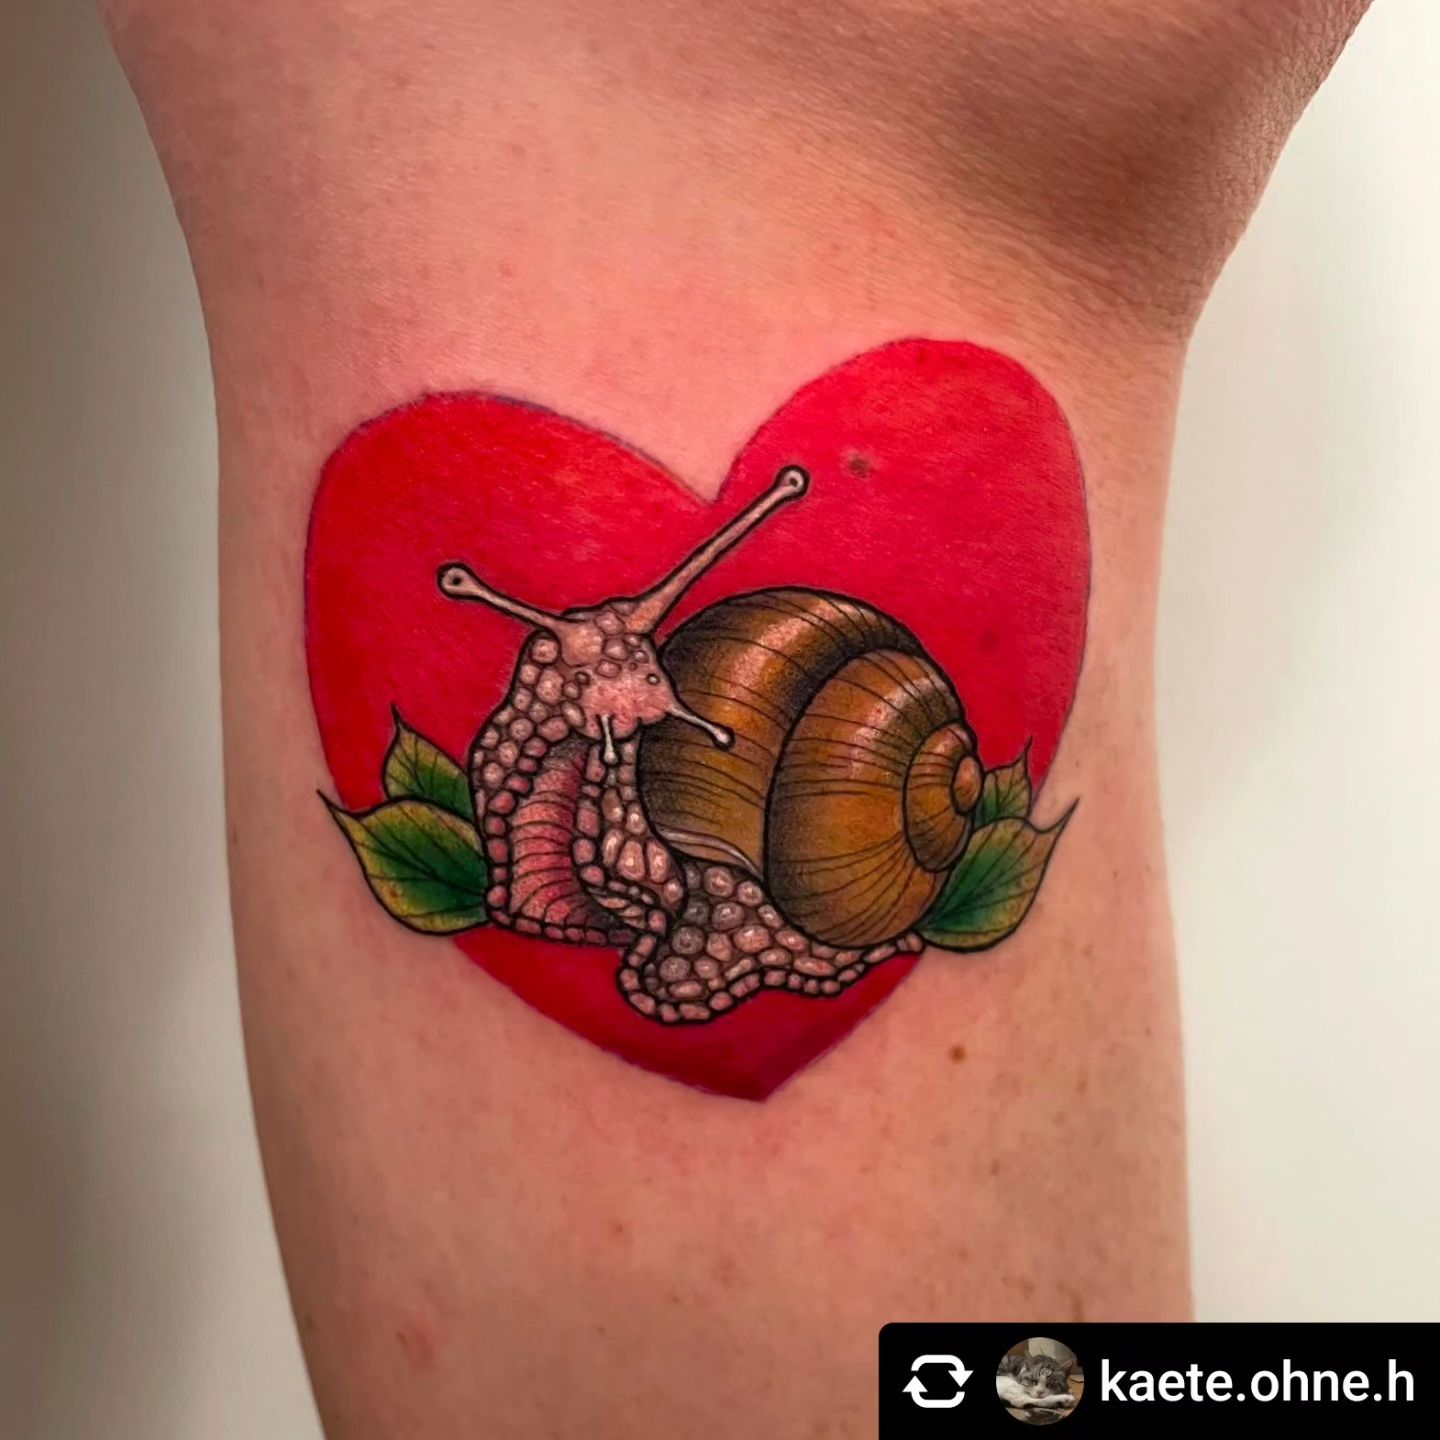 Schnecke von @kaete.ohne.h 

Schnecke 
•
•
•
#inked #inkedgirls #ink #tattoos #t